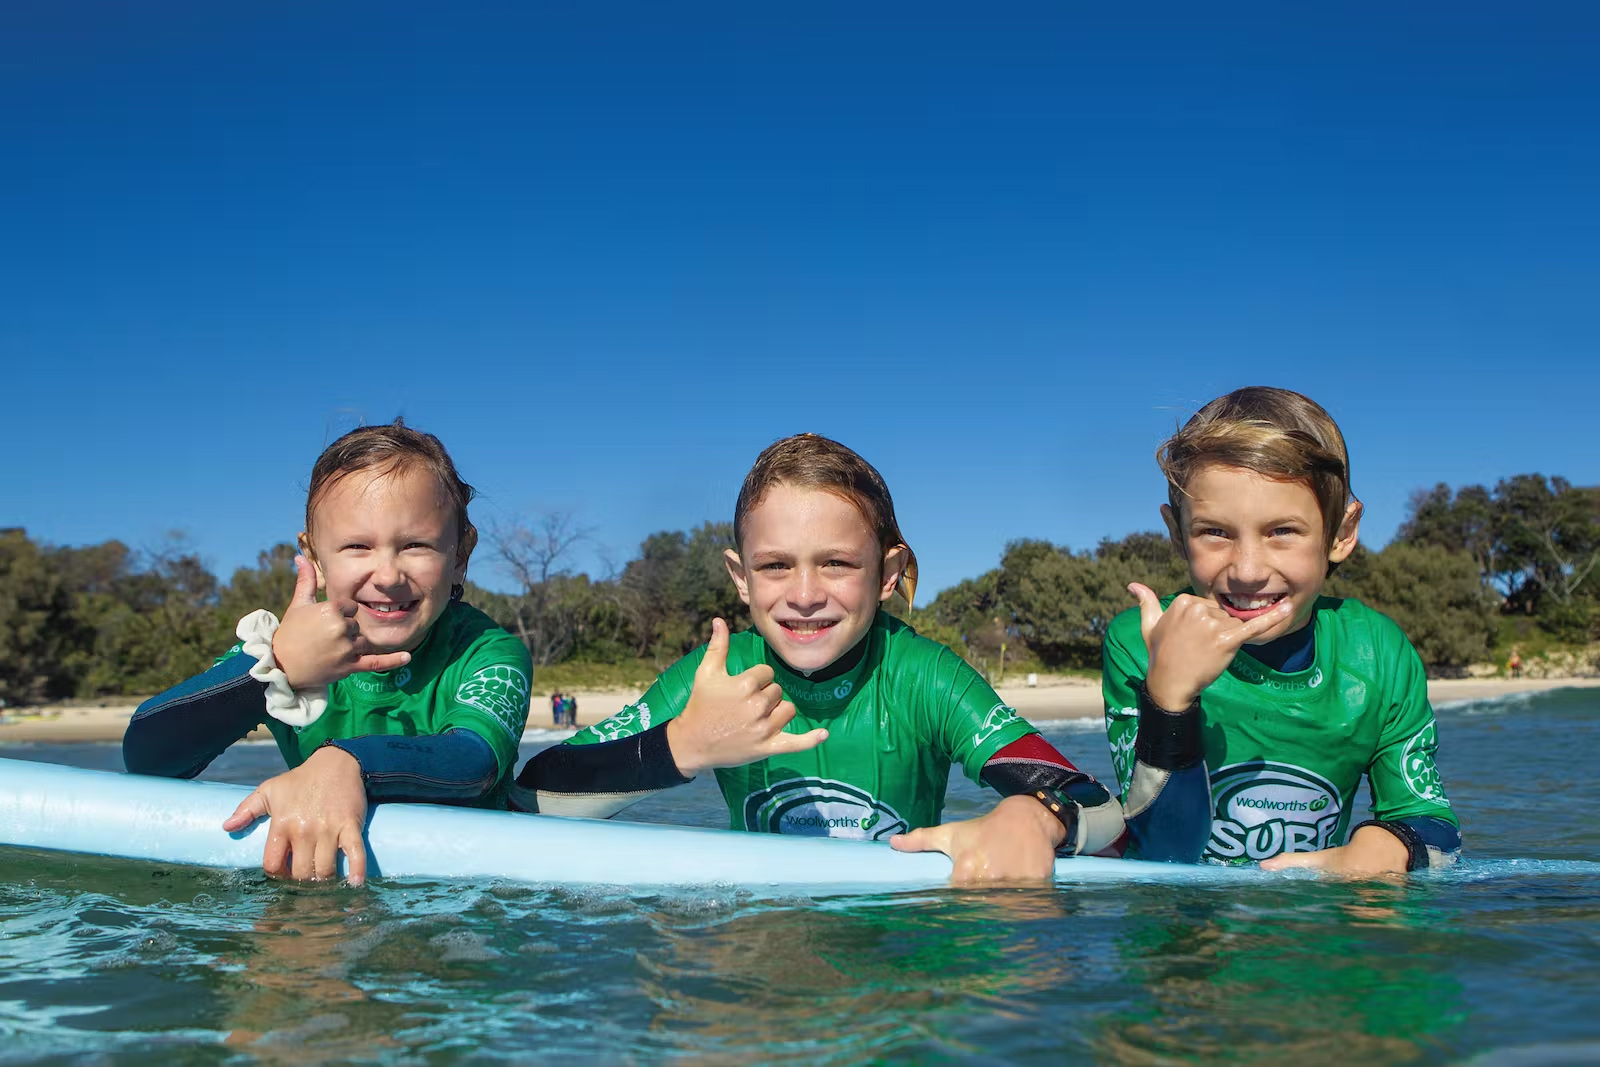 Woolworths SurfGroms Program - Step Up Surf